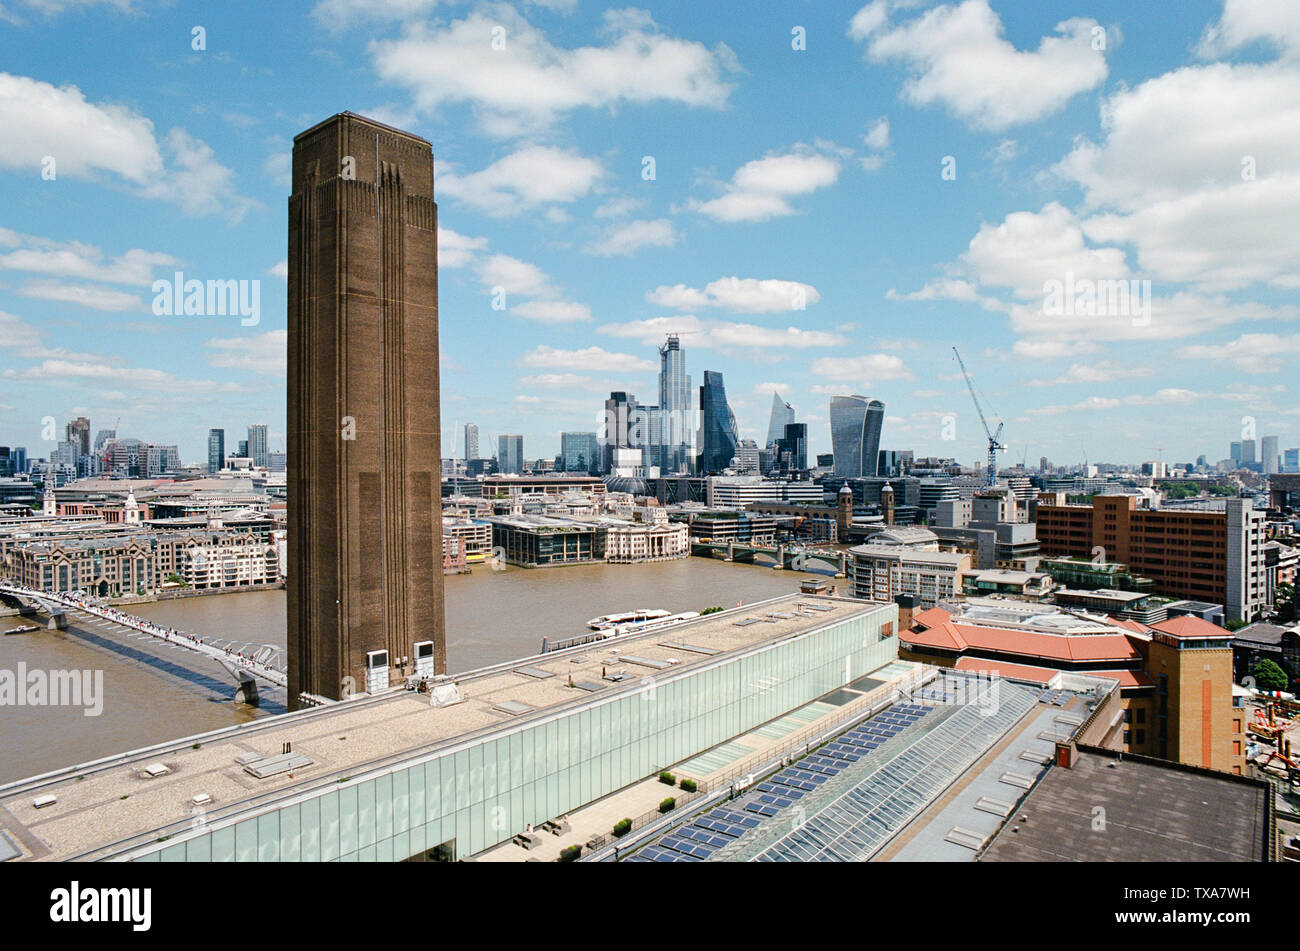 Vue de la ville de Londres, dans le haut de la Tate Modern, avec une vue à vol d'oiseau du Millennium Bridge, London Bridge et le Square Mile Banque D'Images